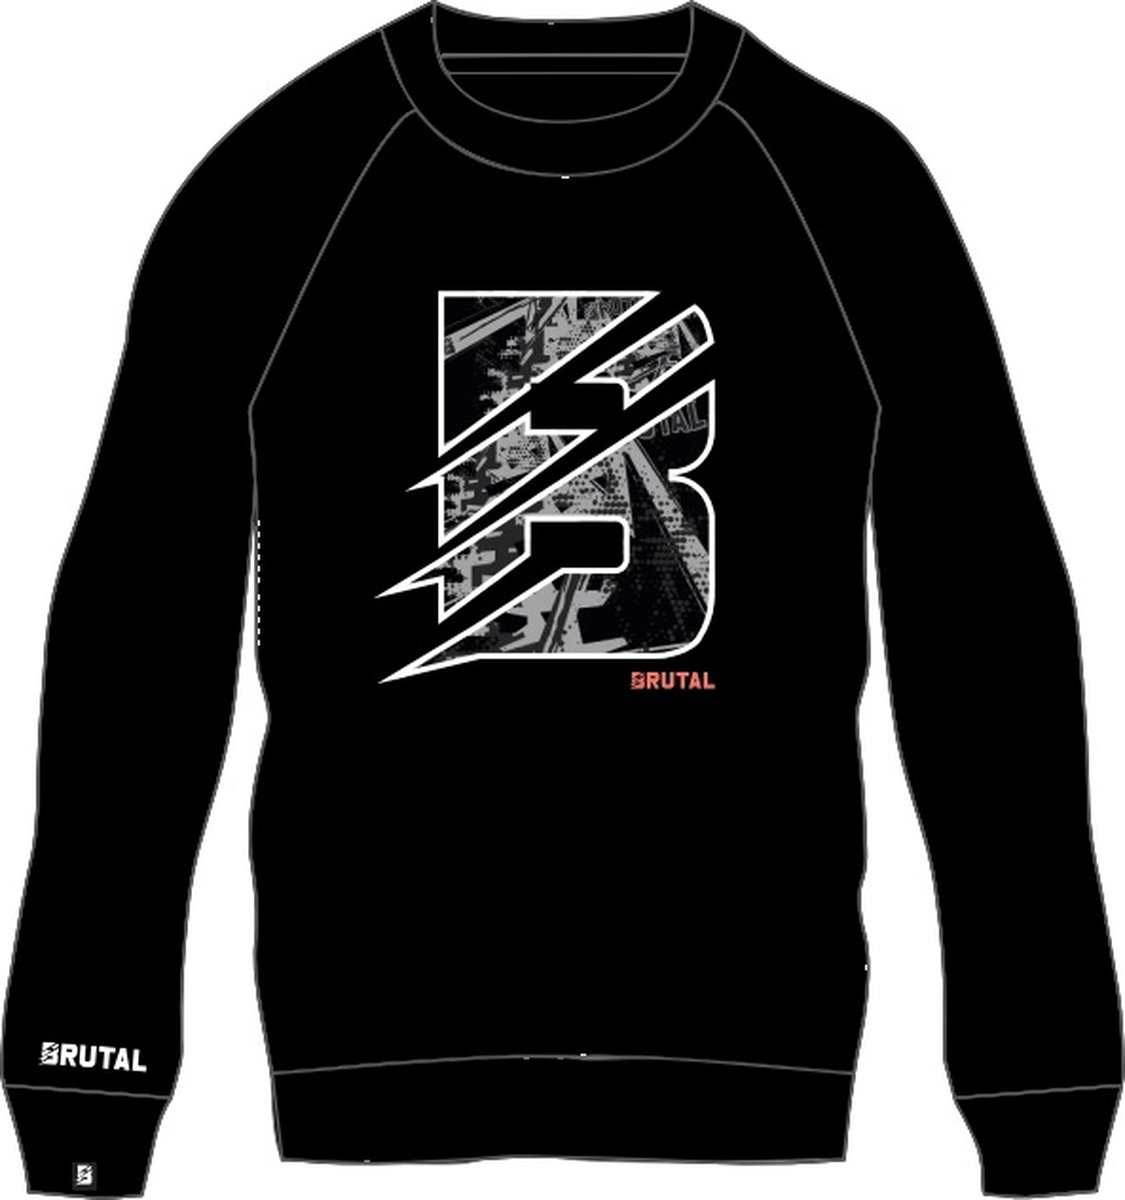 BRUTAL® - Sweater - Sweatshirt Trui - Trui - Zwart - Grijs - Trui - Heren -Dames - Maat L